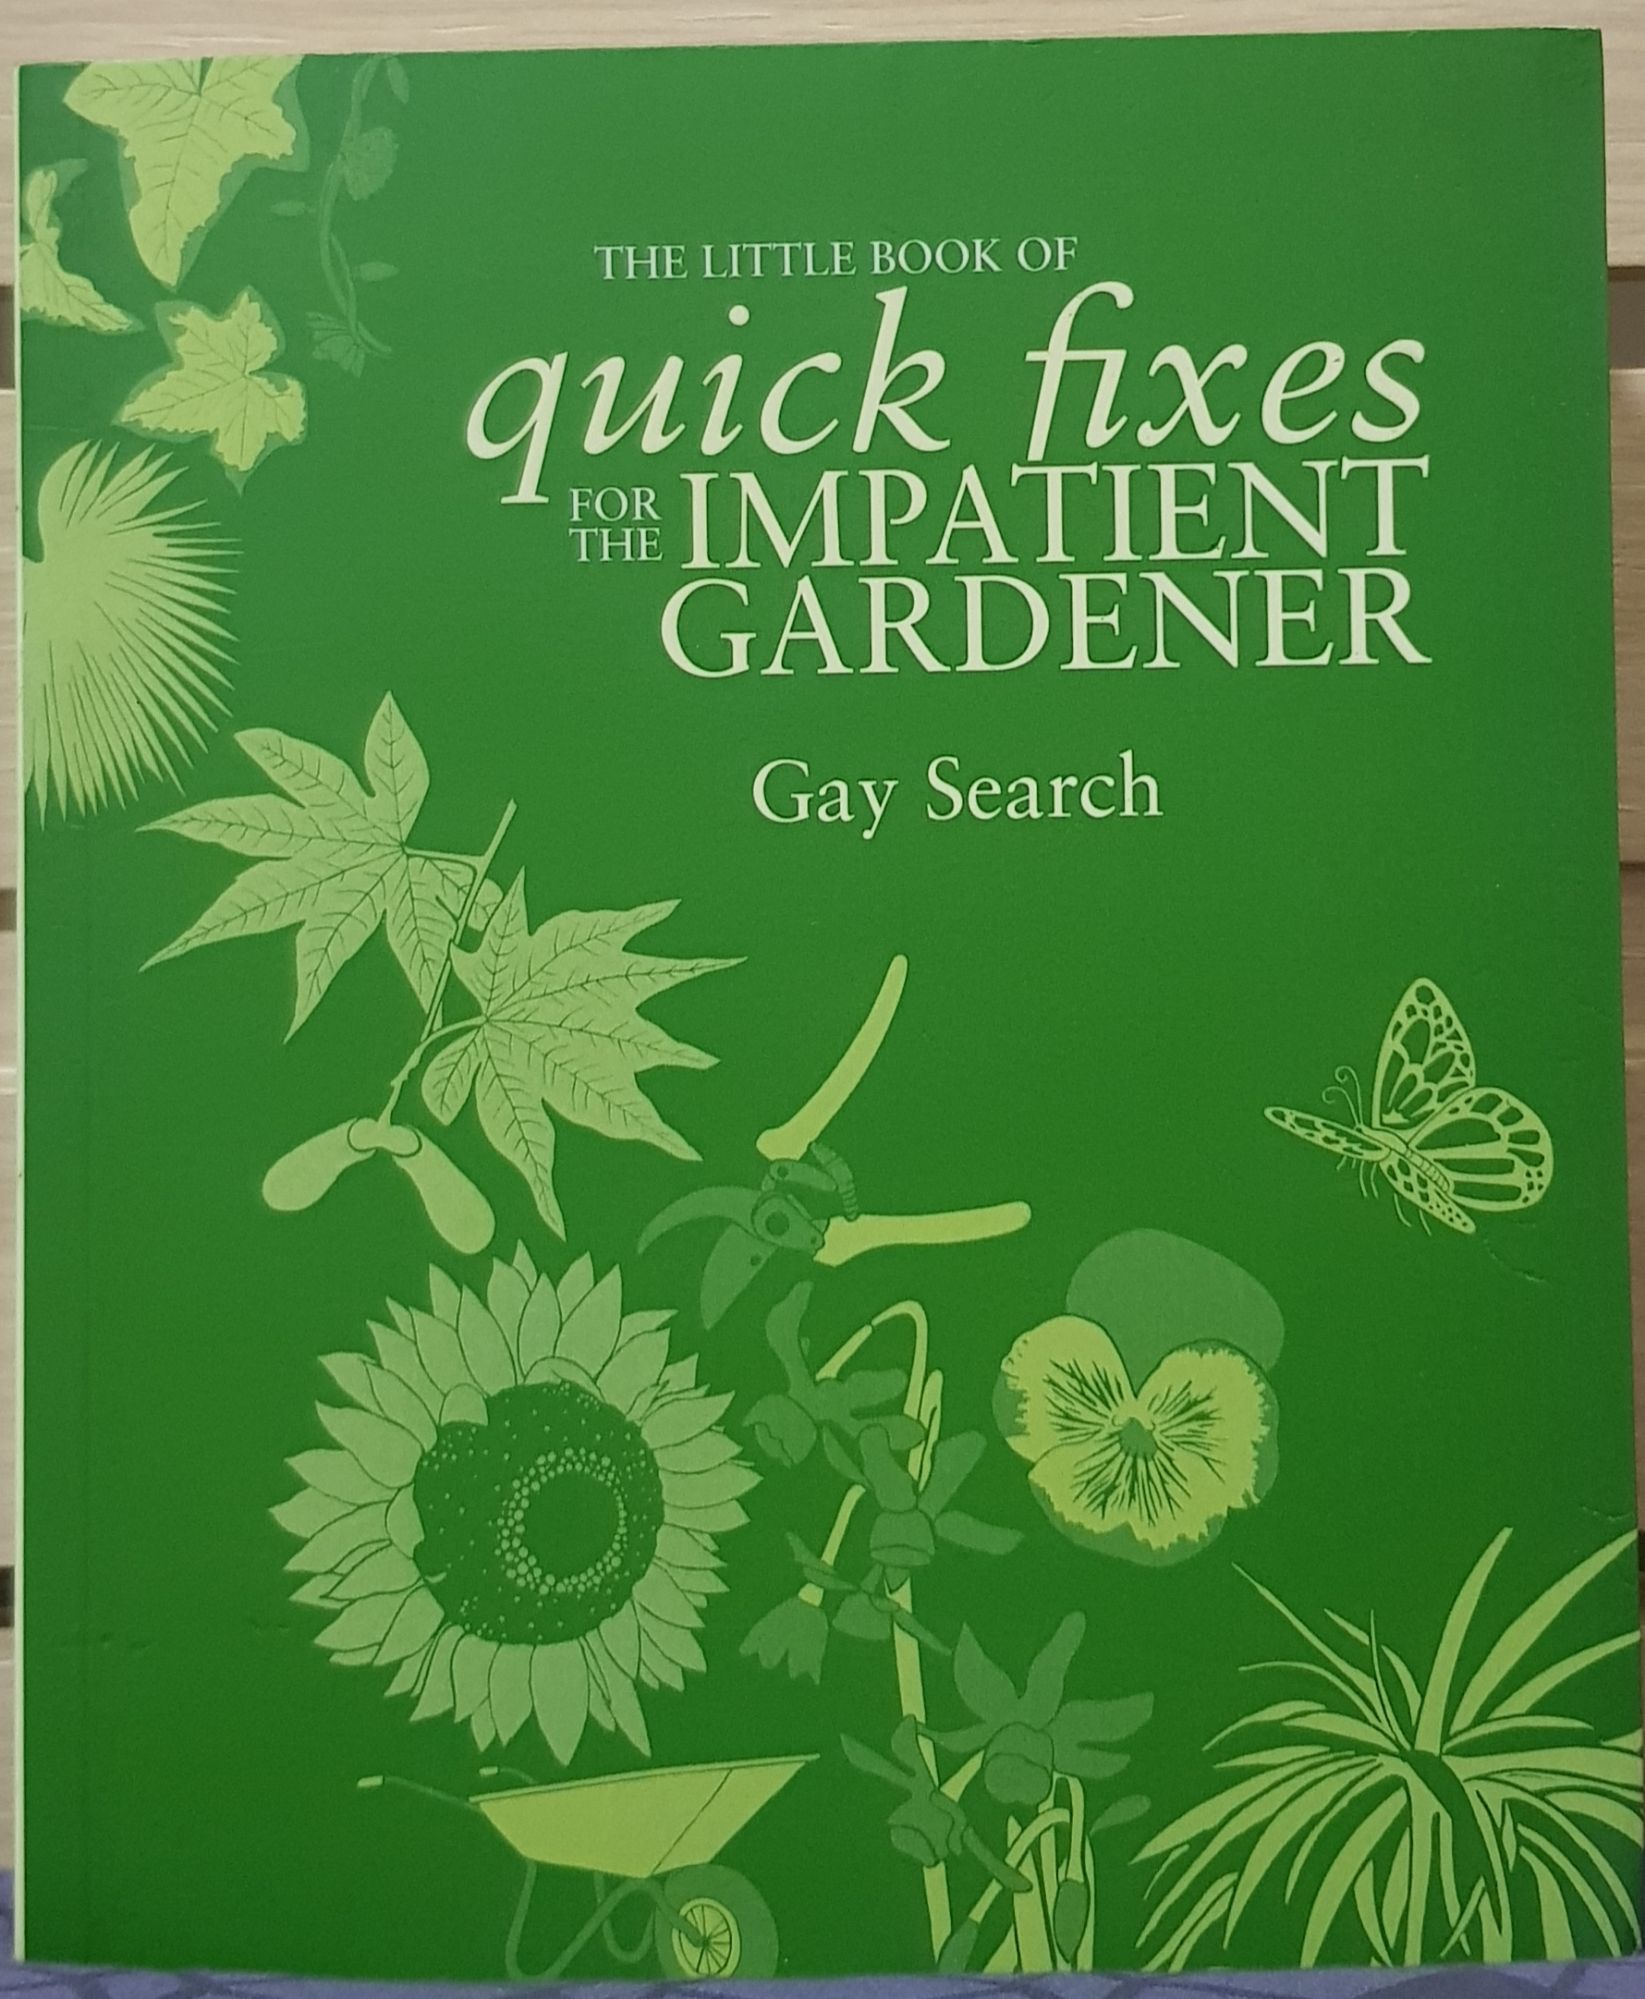 Quick fixes for the impatient gardener